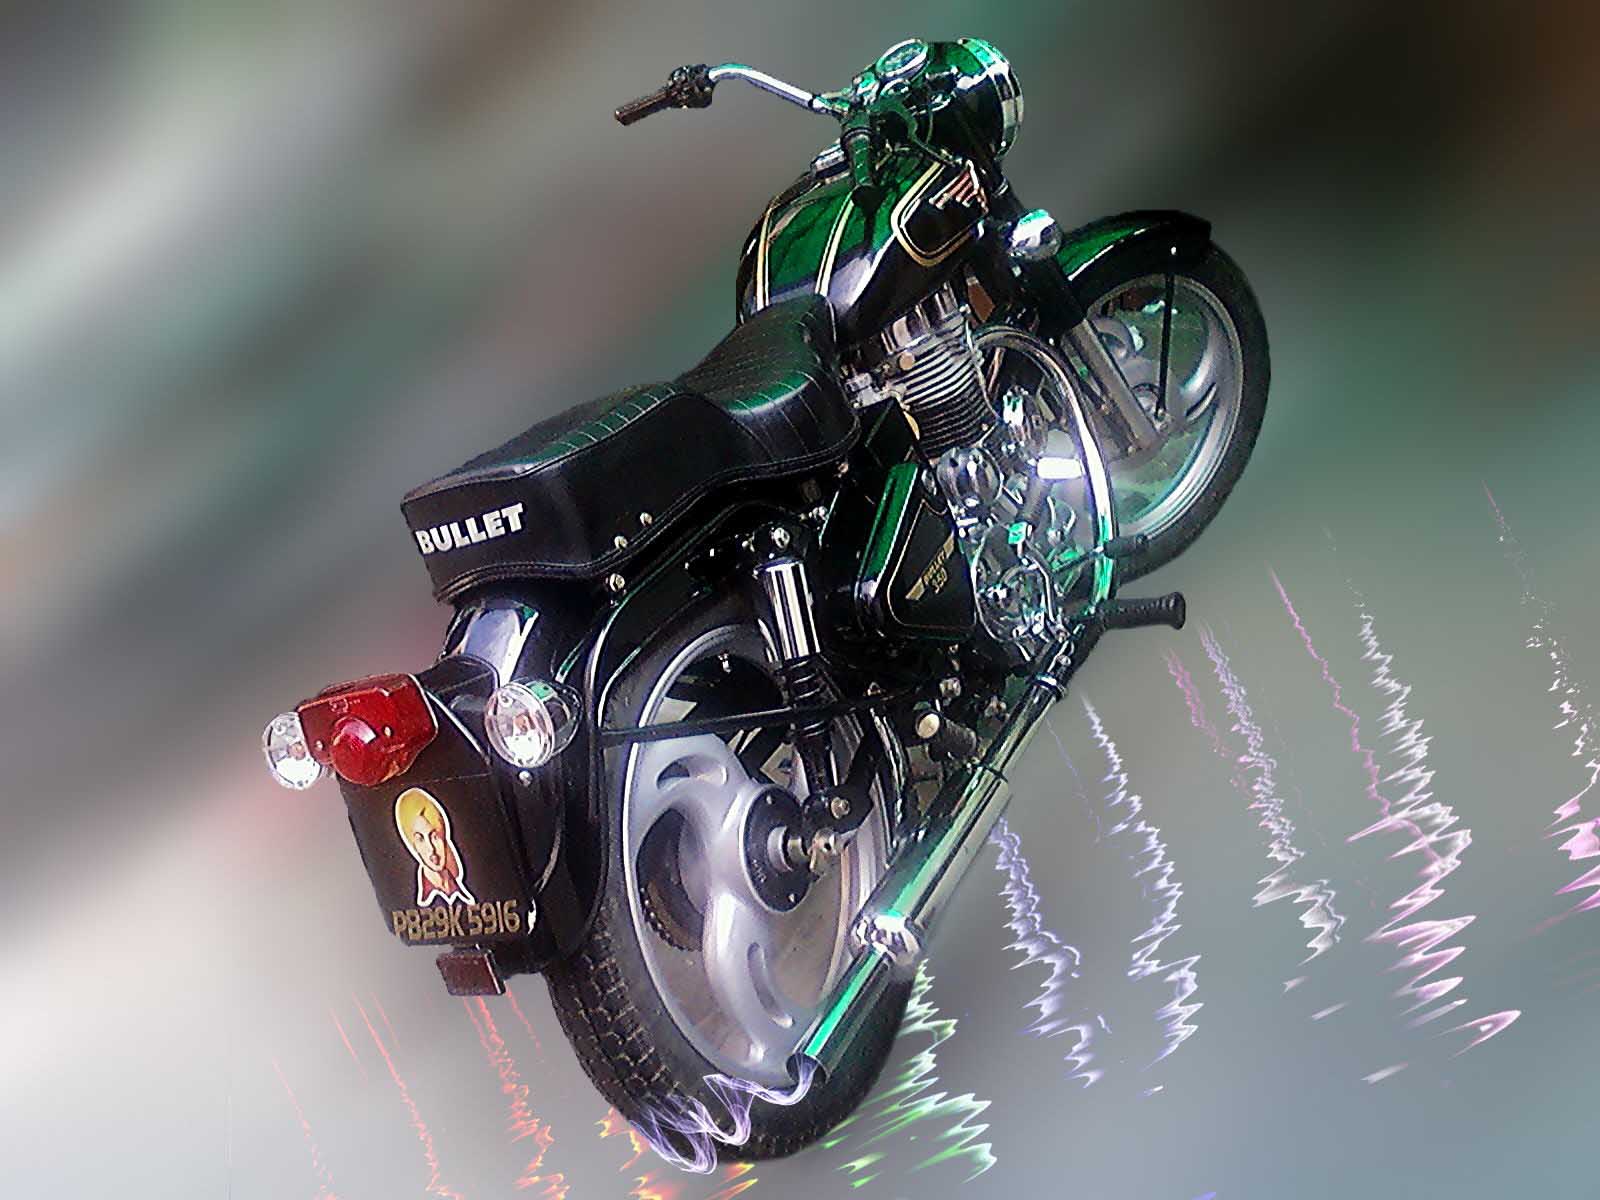 bullet bike hd wallpaper,veicolo a motore,motociclo,veicolo,illuminazione automobilistica,motore